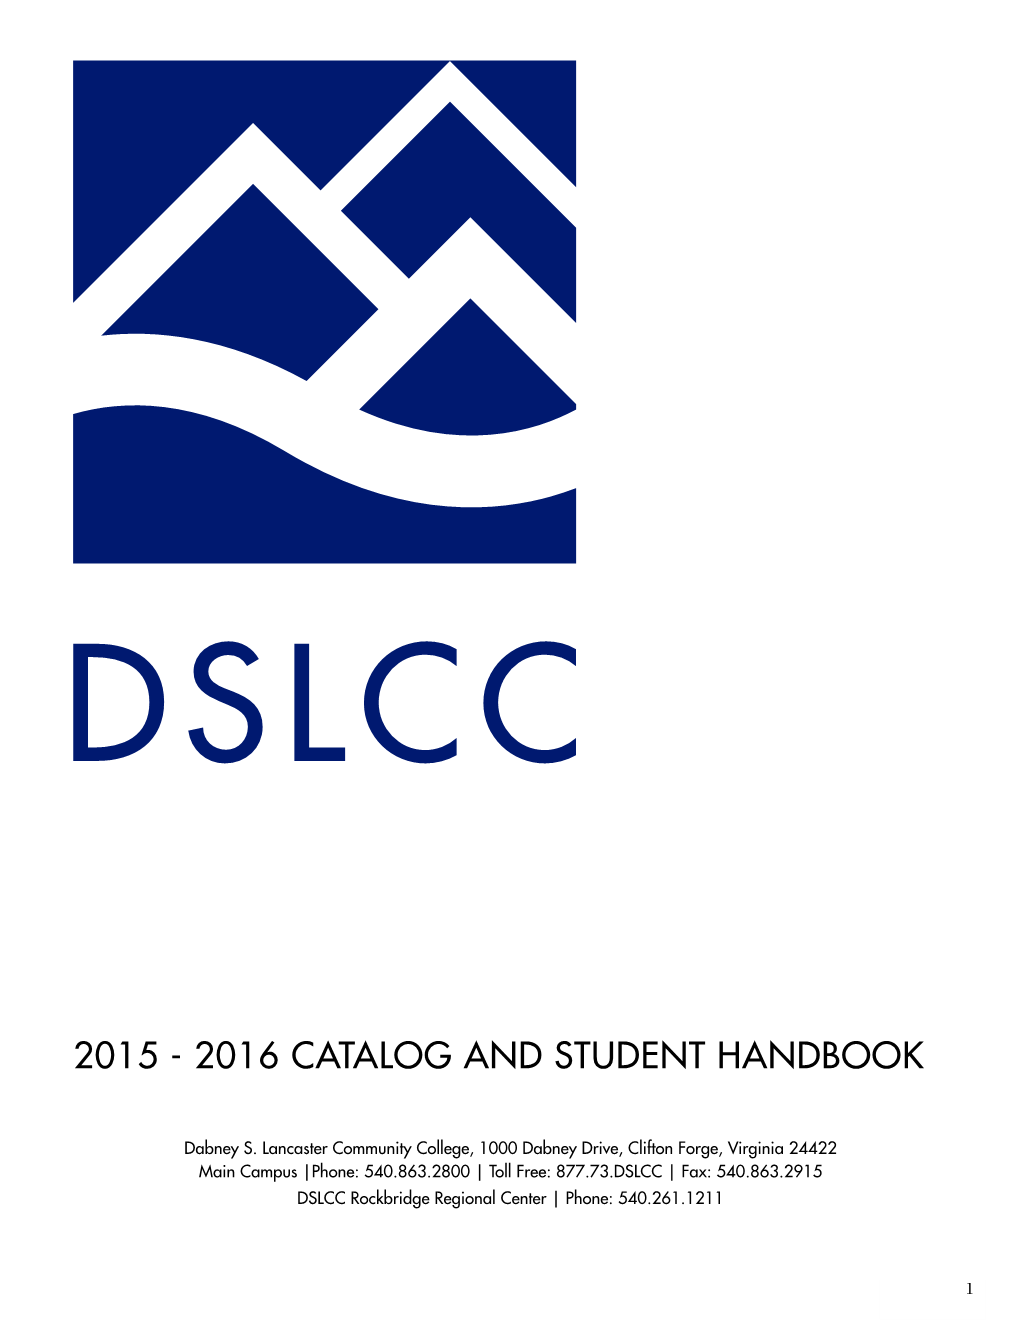 2015-2016 DSLCC Catalog & Student Handbook